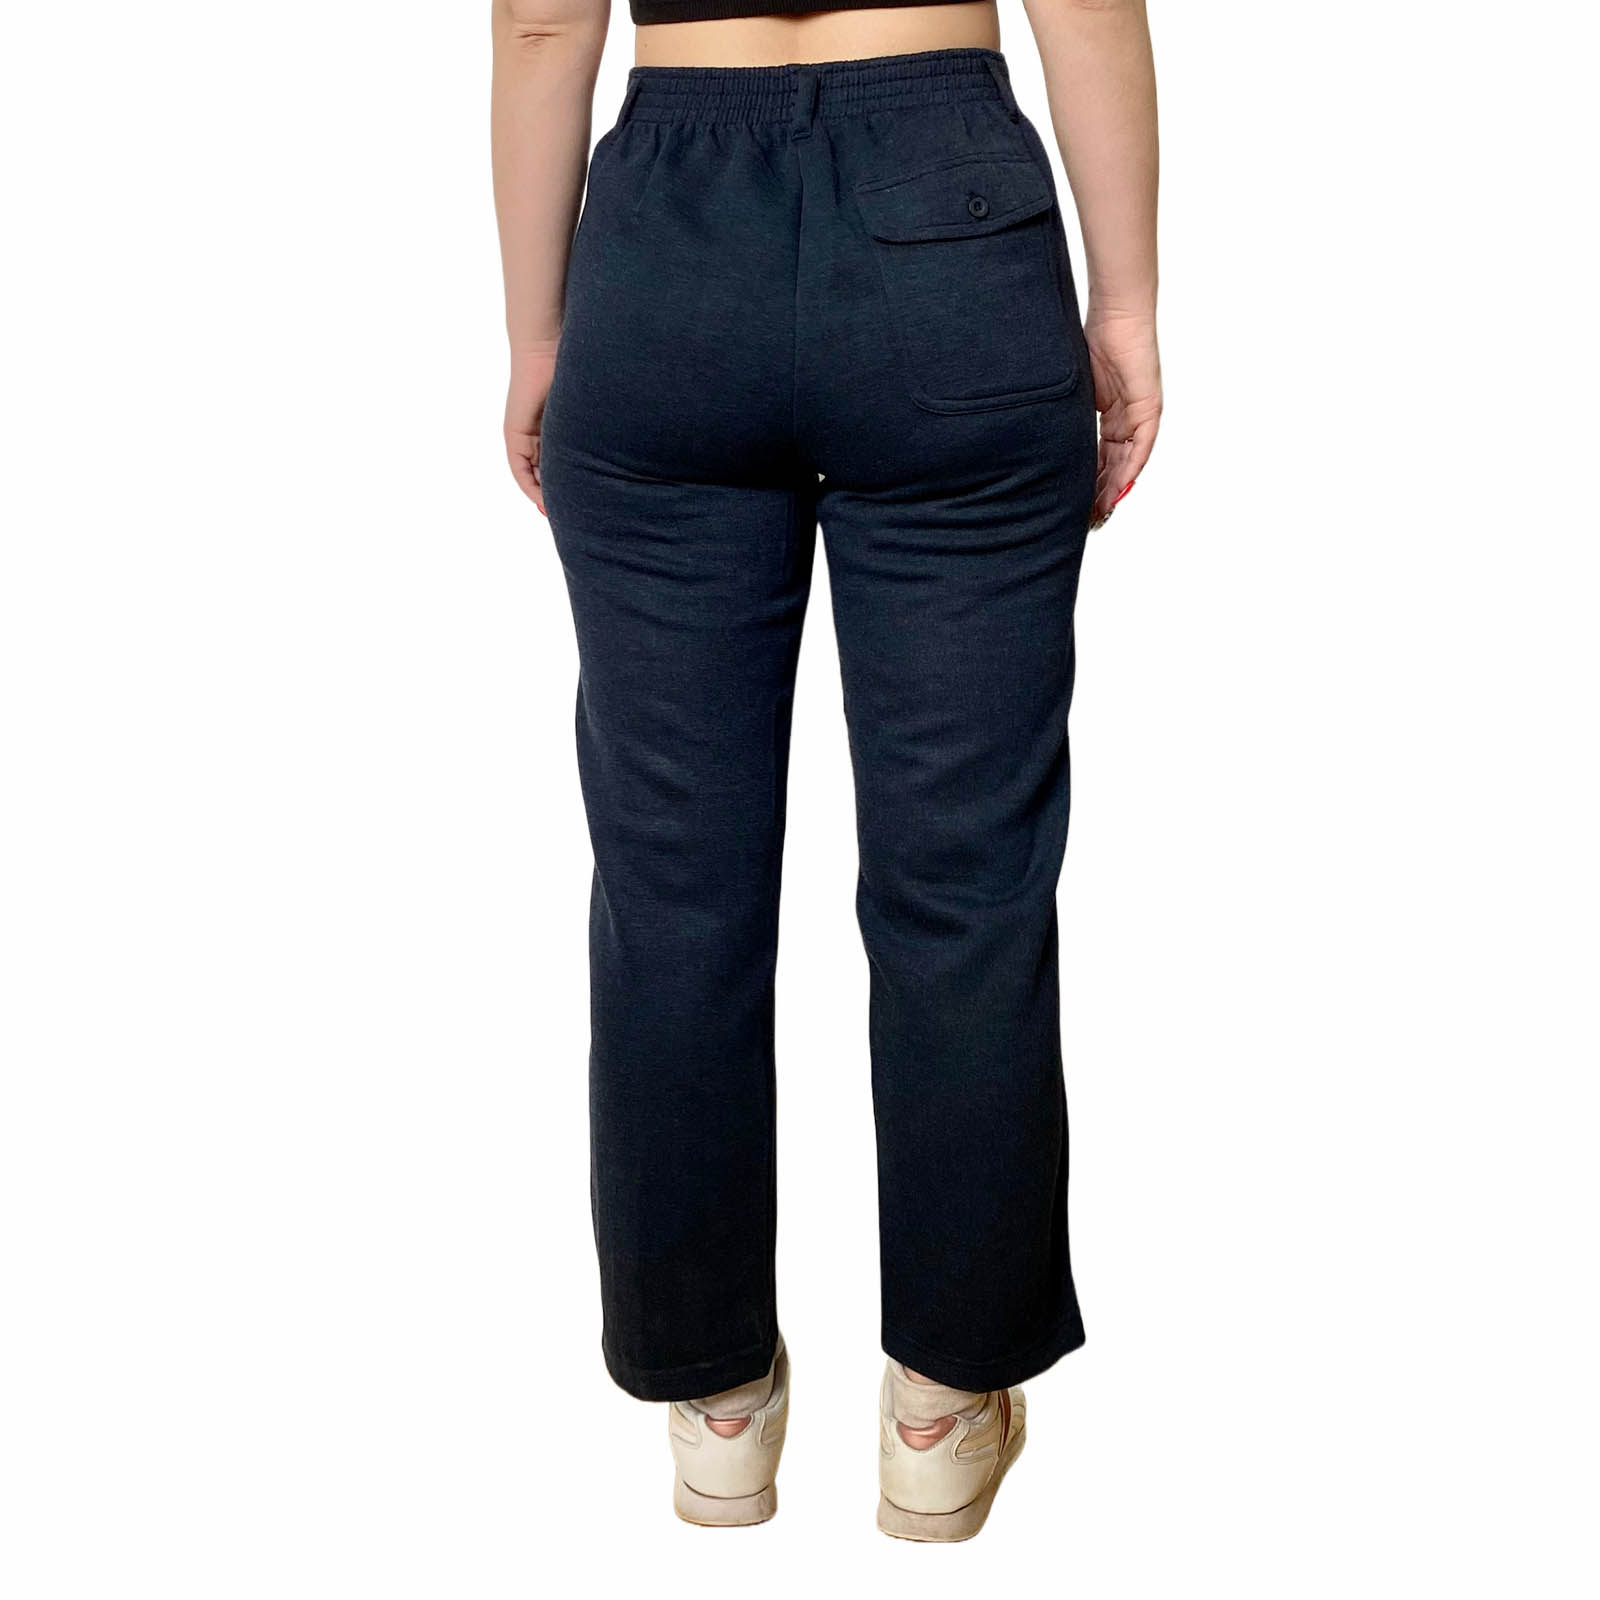 Недорогие женские брюки в нашем интернет магазине